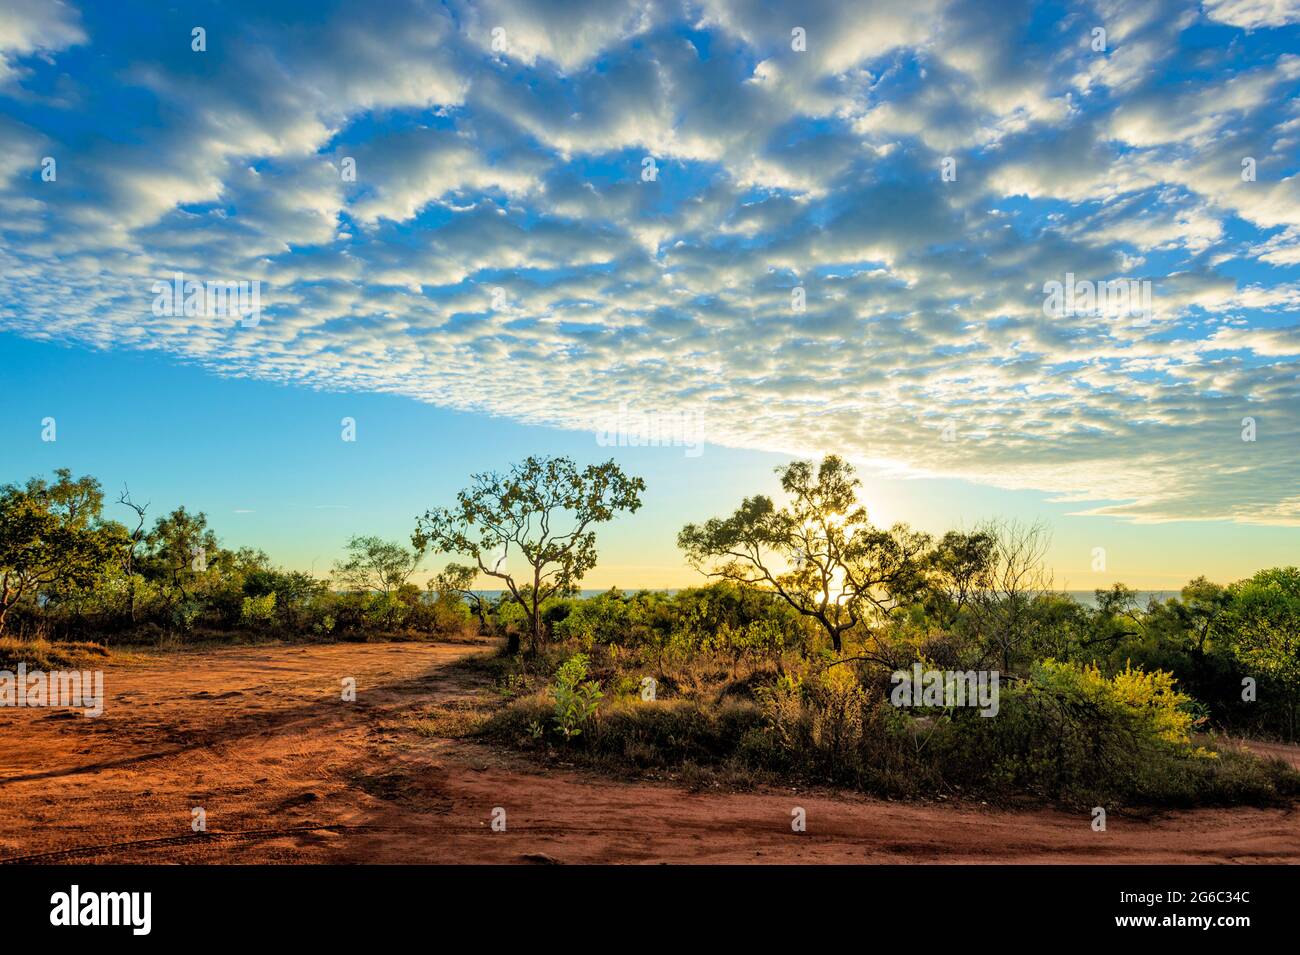 Lever de soleil avec ciel de maquereau au-dessus de Pender Bay Escape, péninsule de Dampier, Australie occidentale, Australie occidentale, Australie Banque D'Images